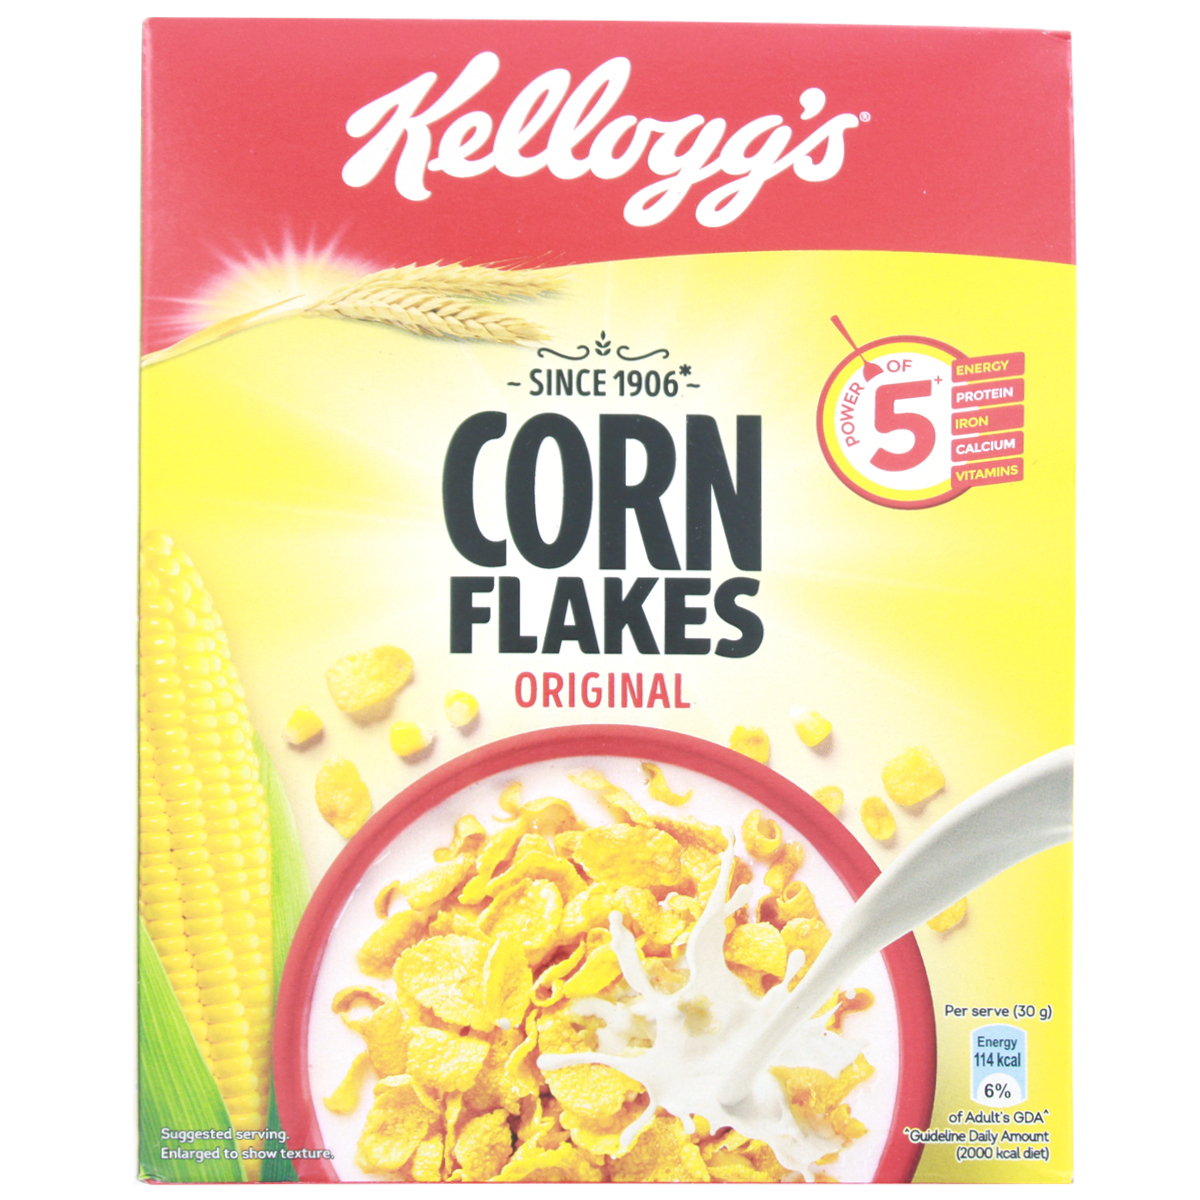 Kellogg's Corn Flakes Original  Power of 5: Energy, Protein, Iron